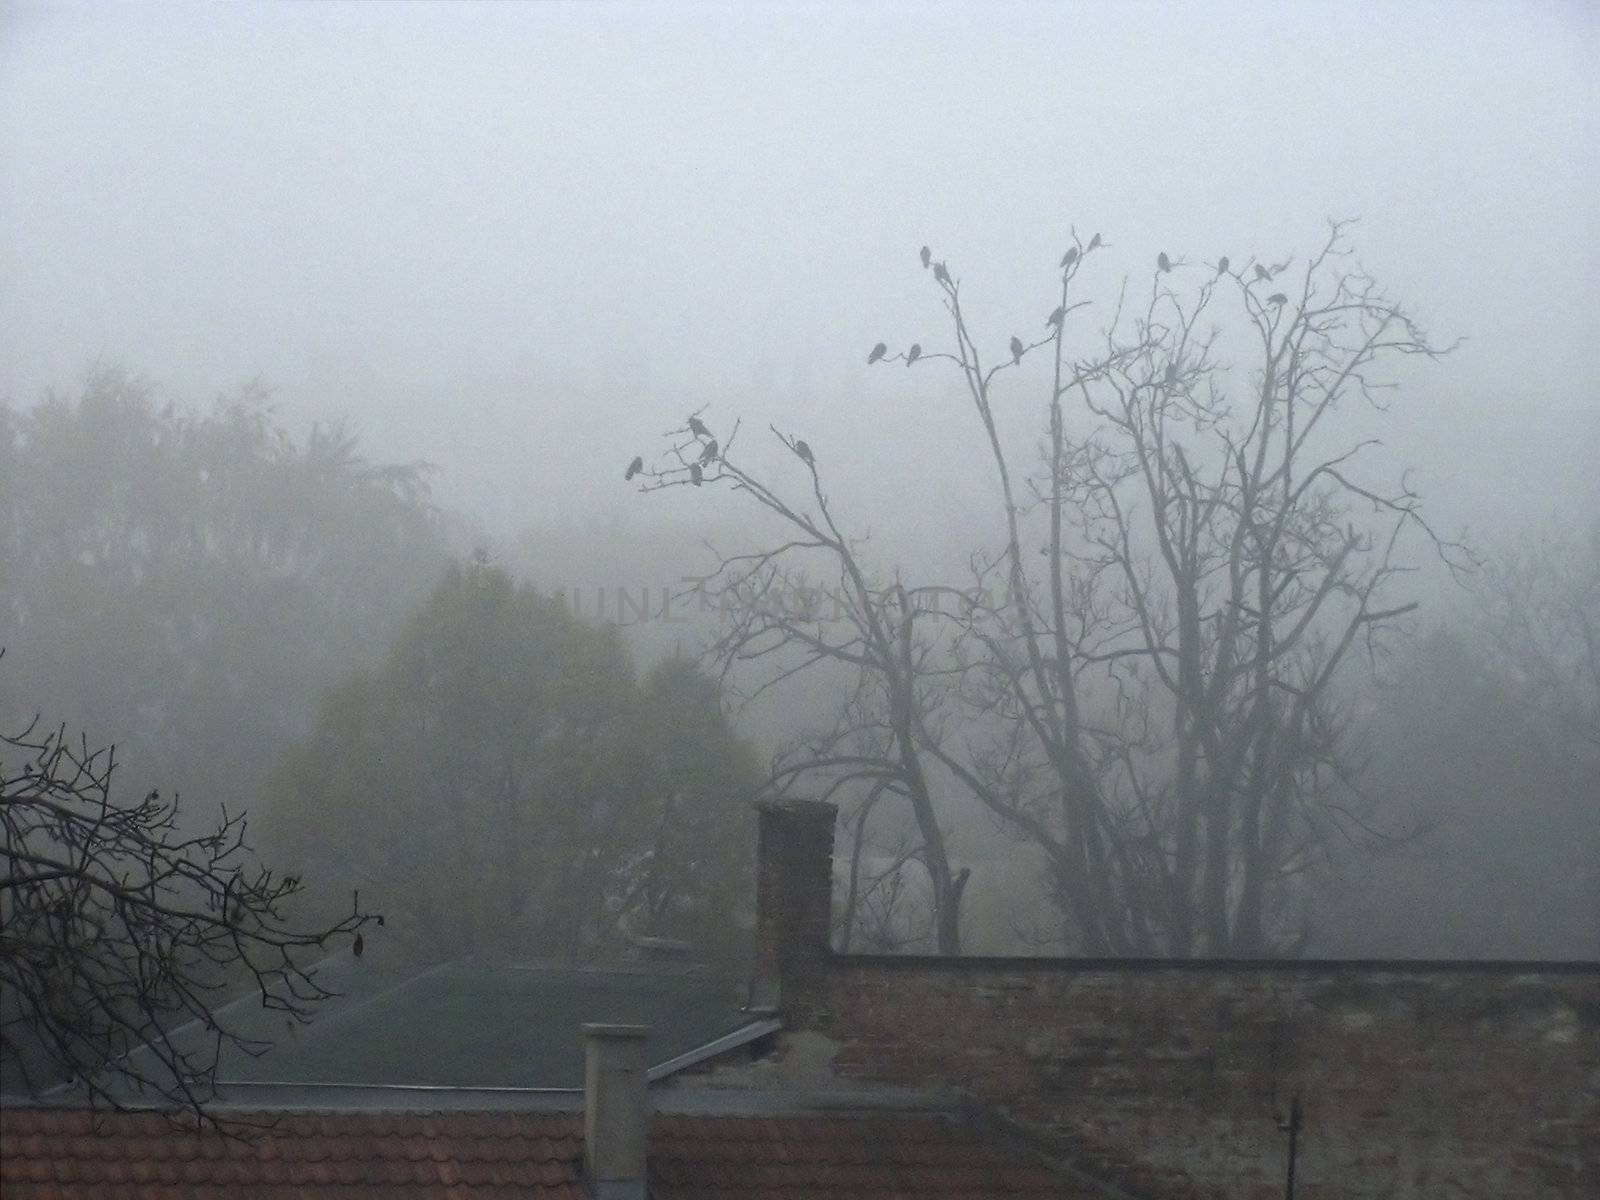 Birds in Mist by penta